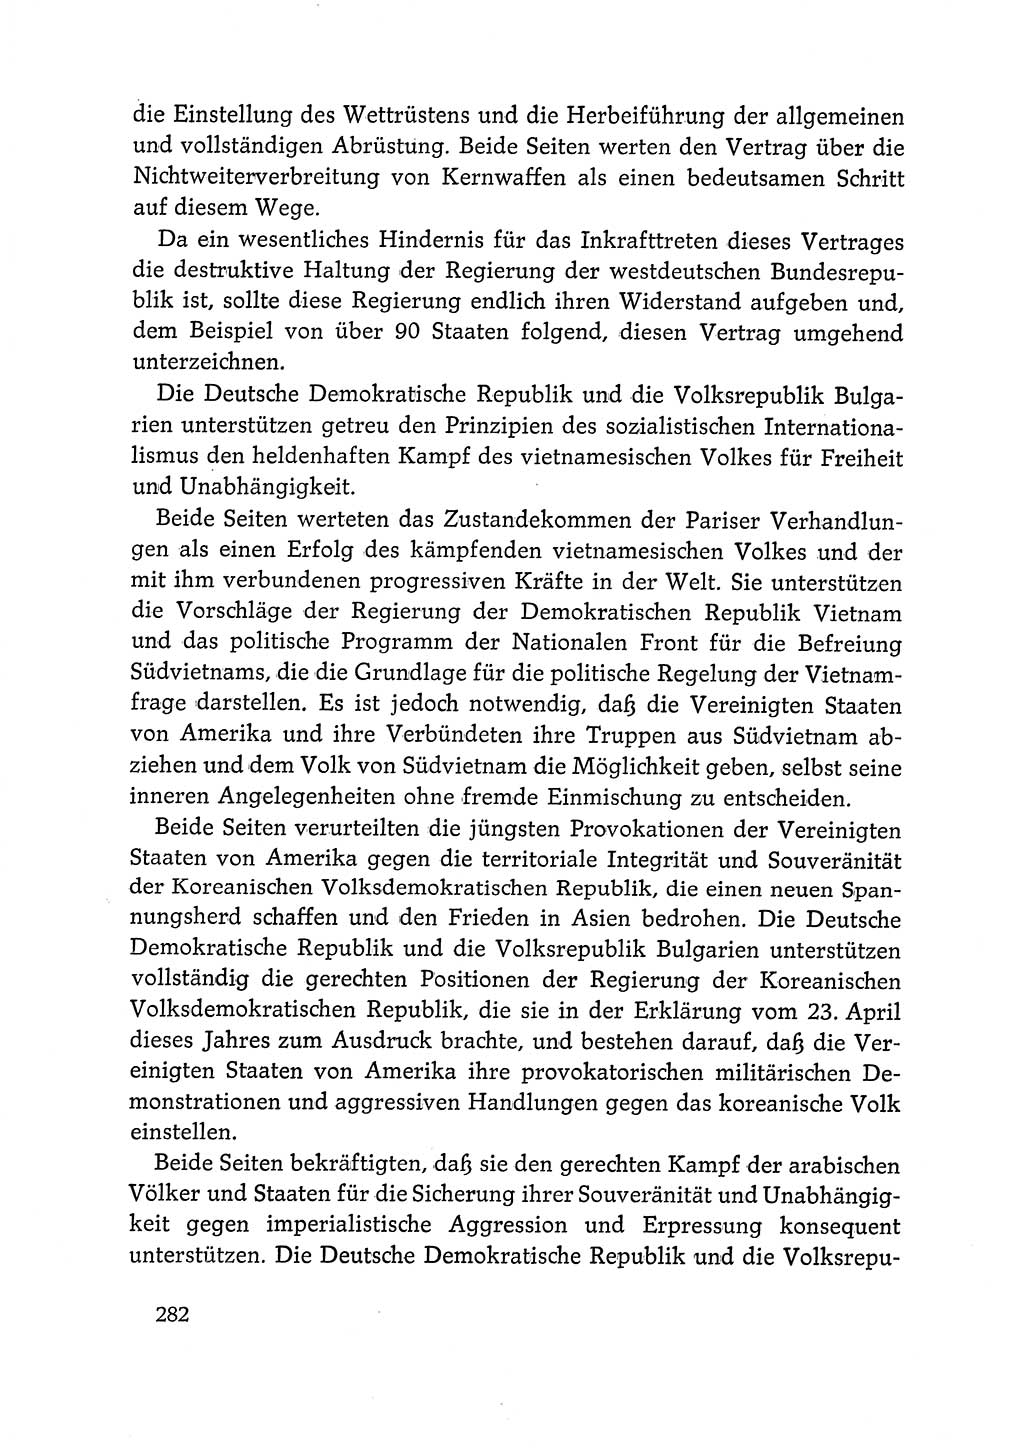 Dokumente der Sozialistischen Einheitspartei Deutschlands (SED) [Deutsche Demokratische Republik (DDR)] 1968-1969, Seite 282 (Dok. SED DDR 1968-1969, S. 282)